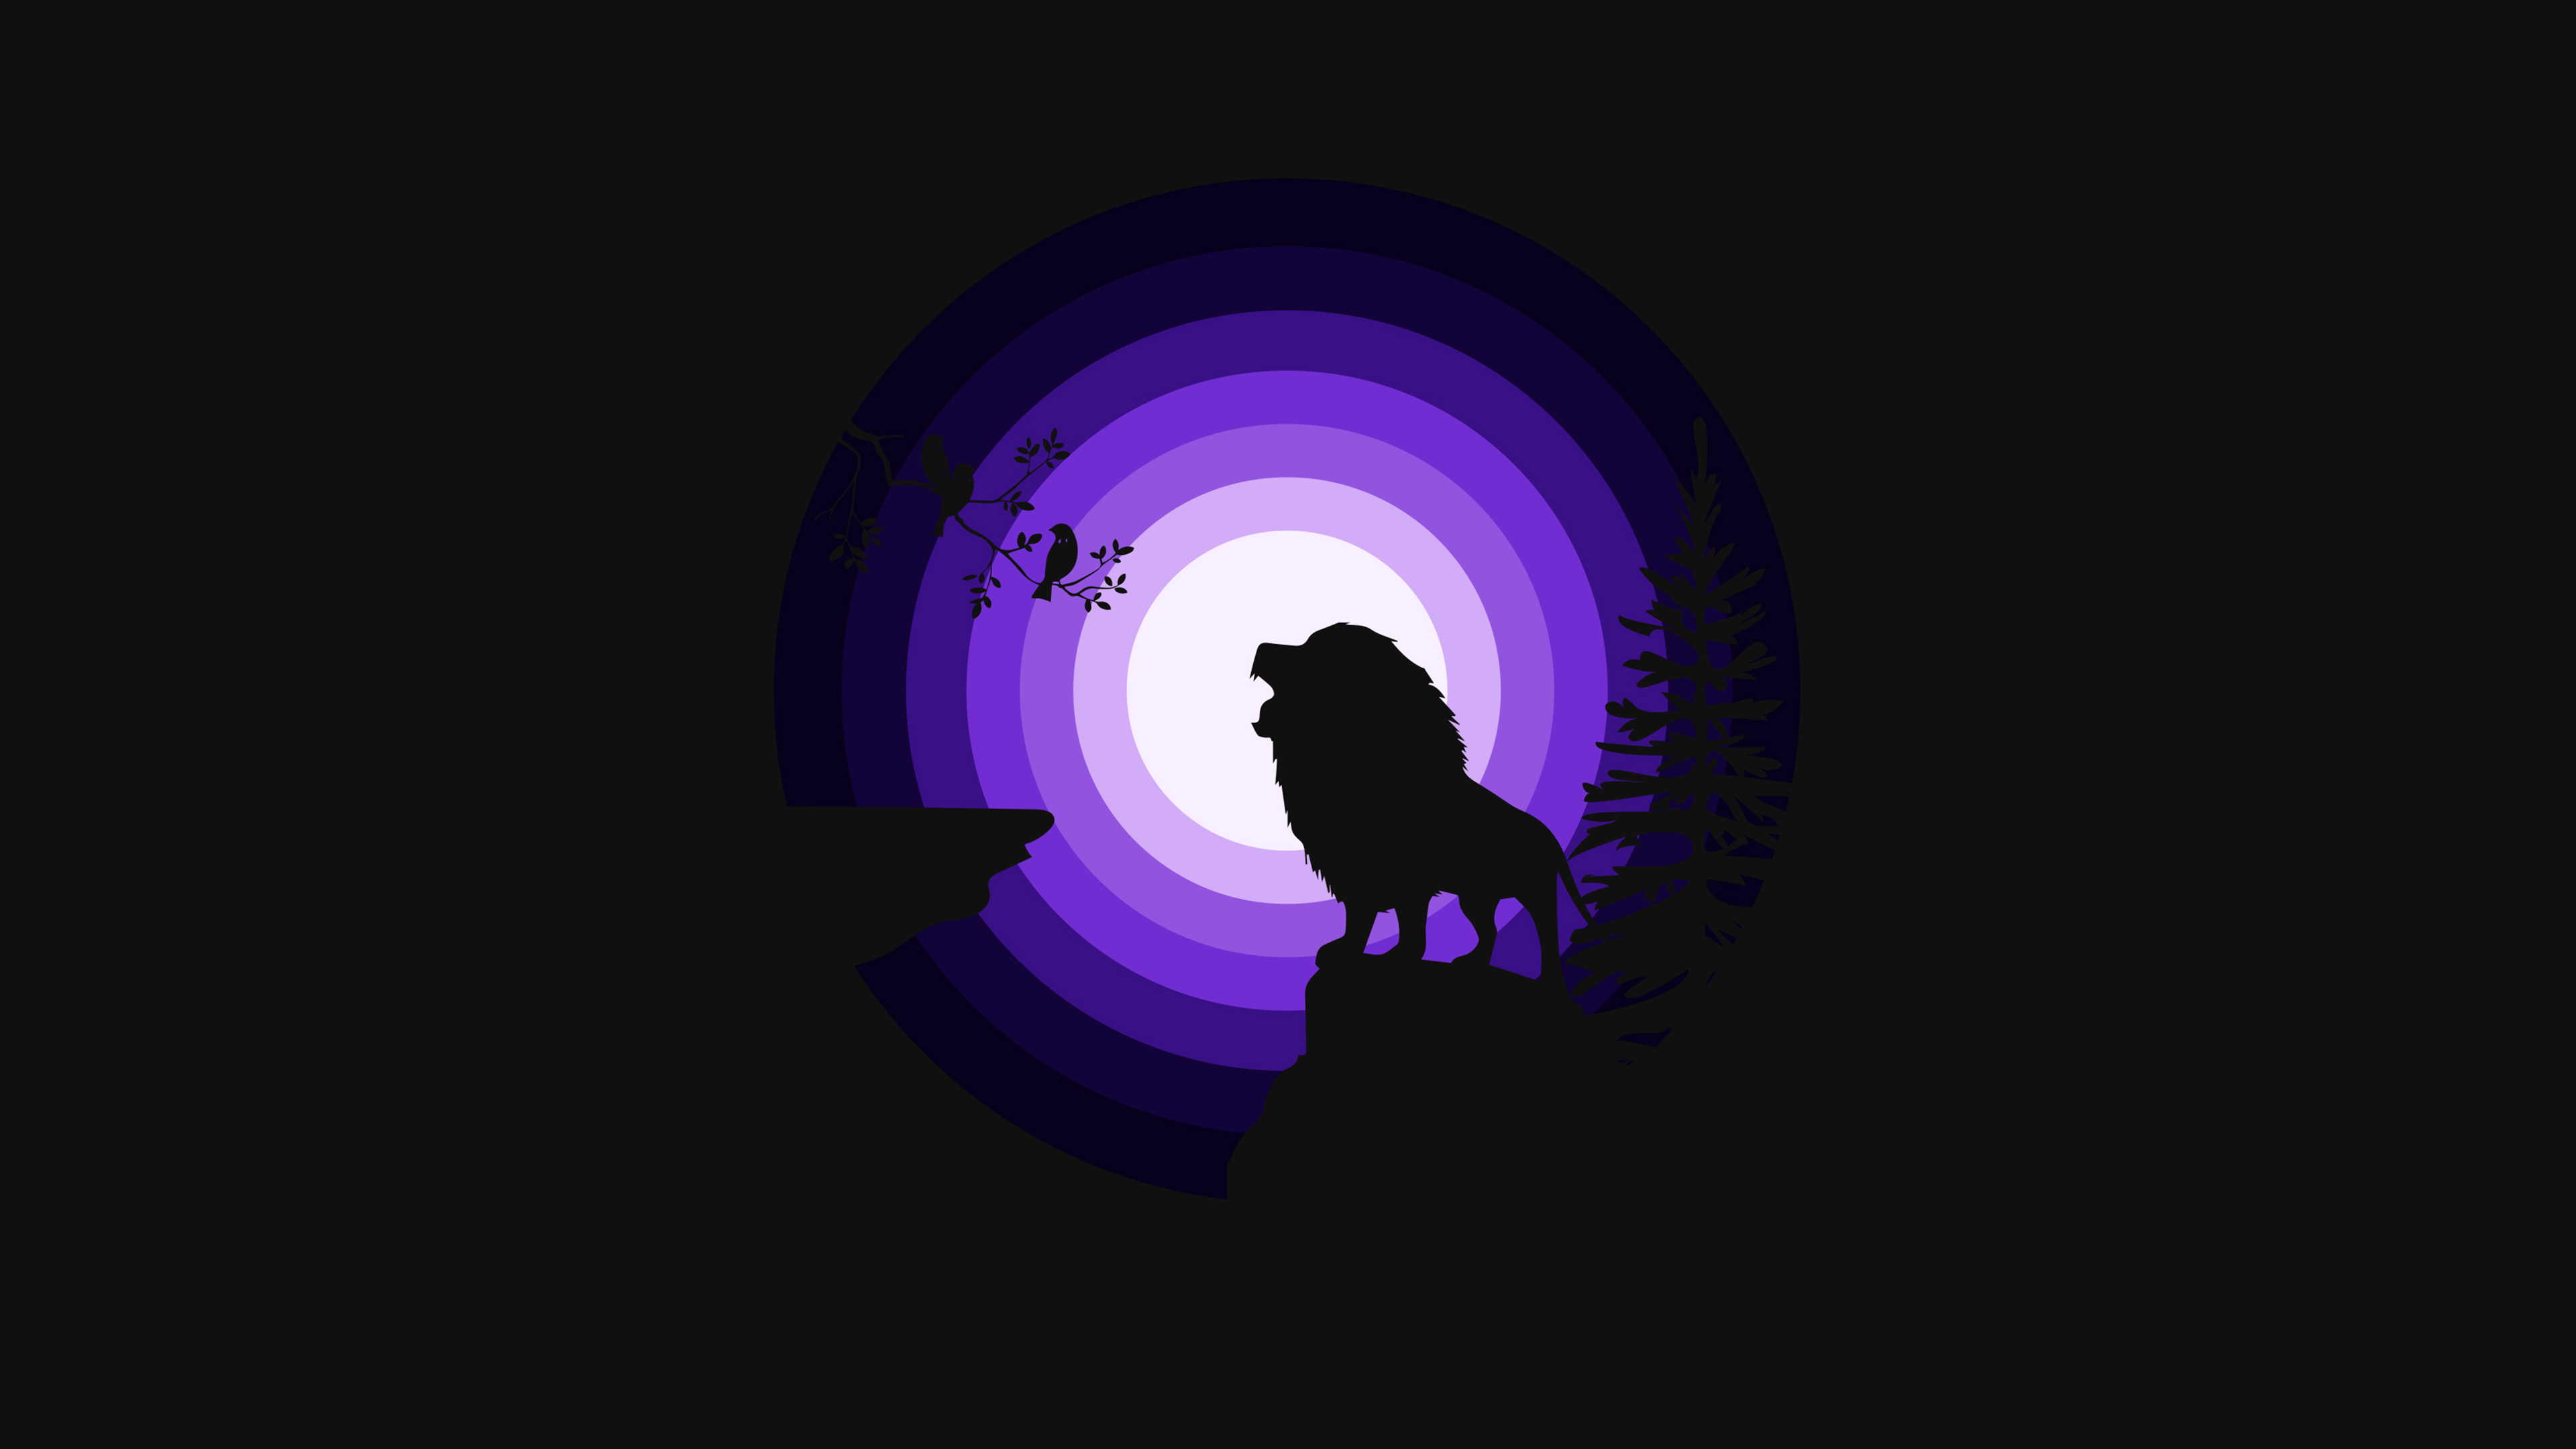 Lion 4K Wallpaper, Roaring, Silhouette, Moon, Night, Purple, Black Dark